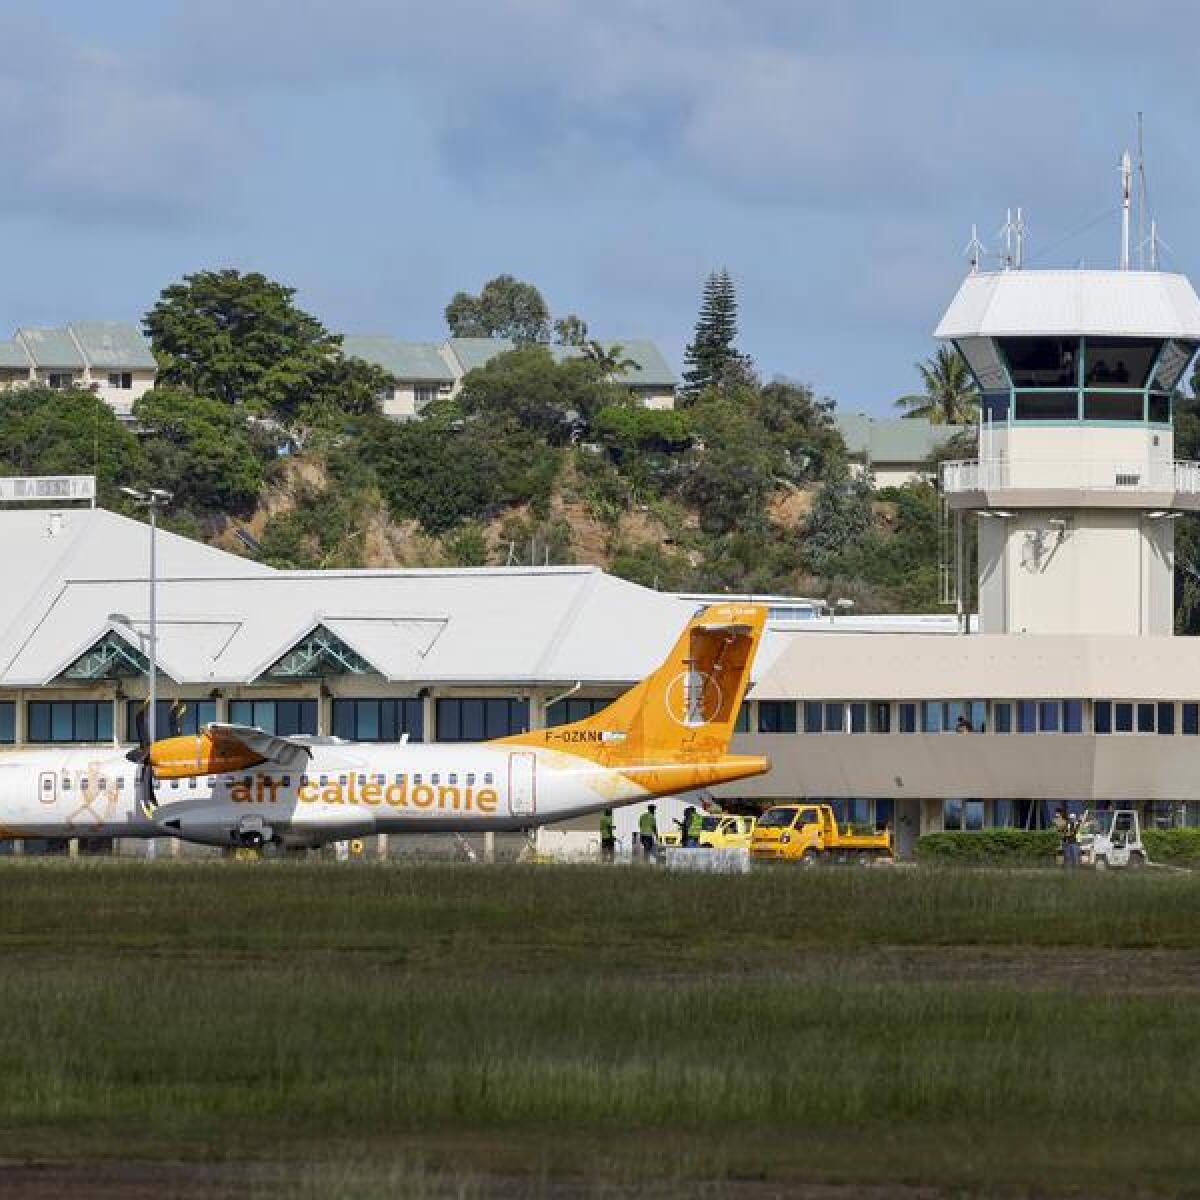 New Caledonia's international airport